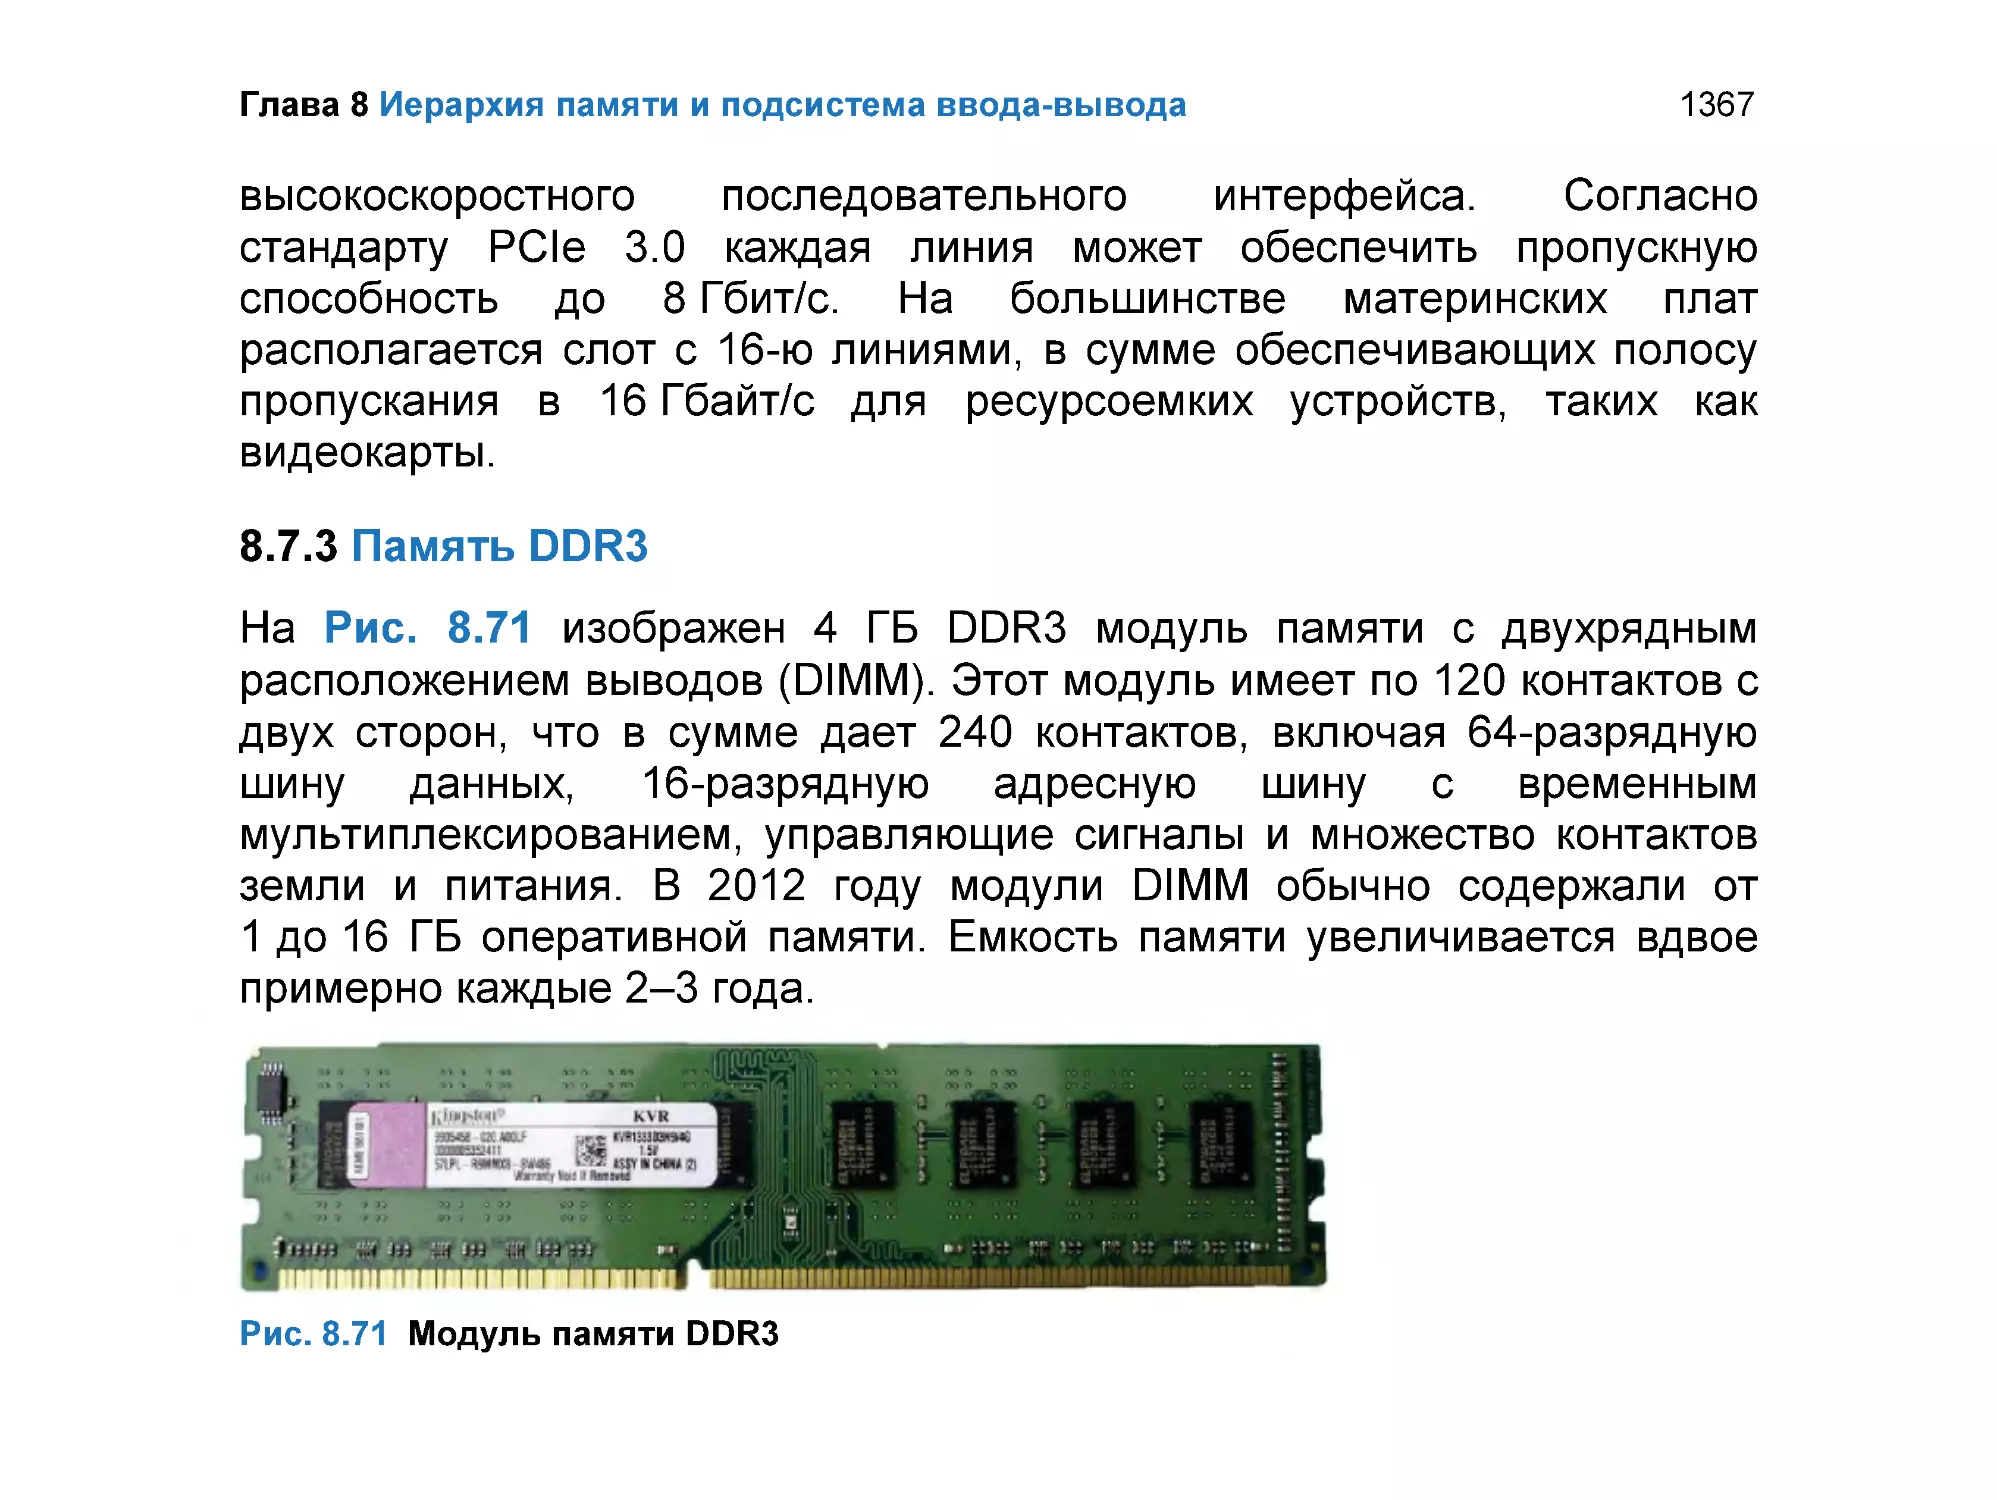 8.7.3 Память DDR3